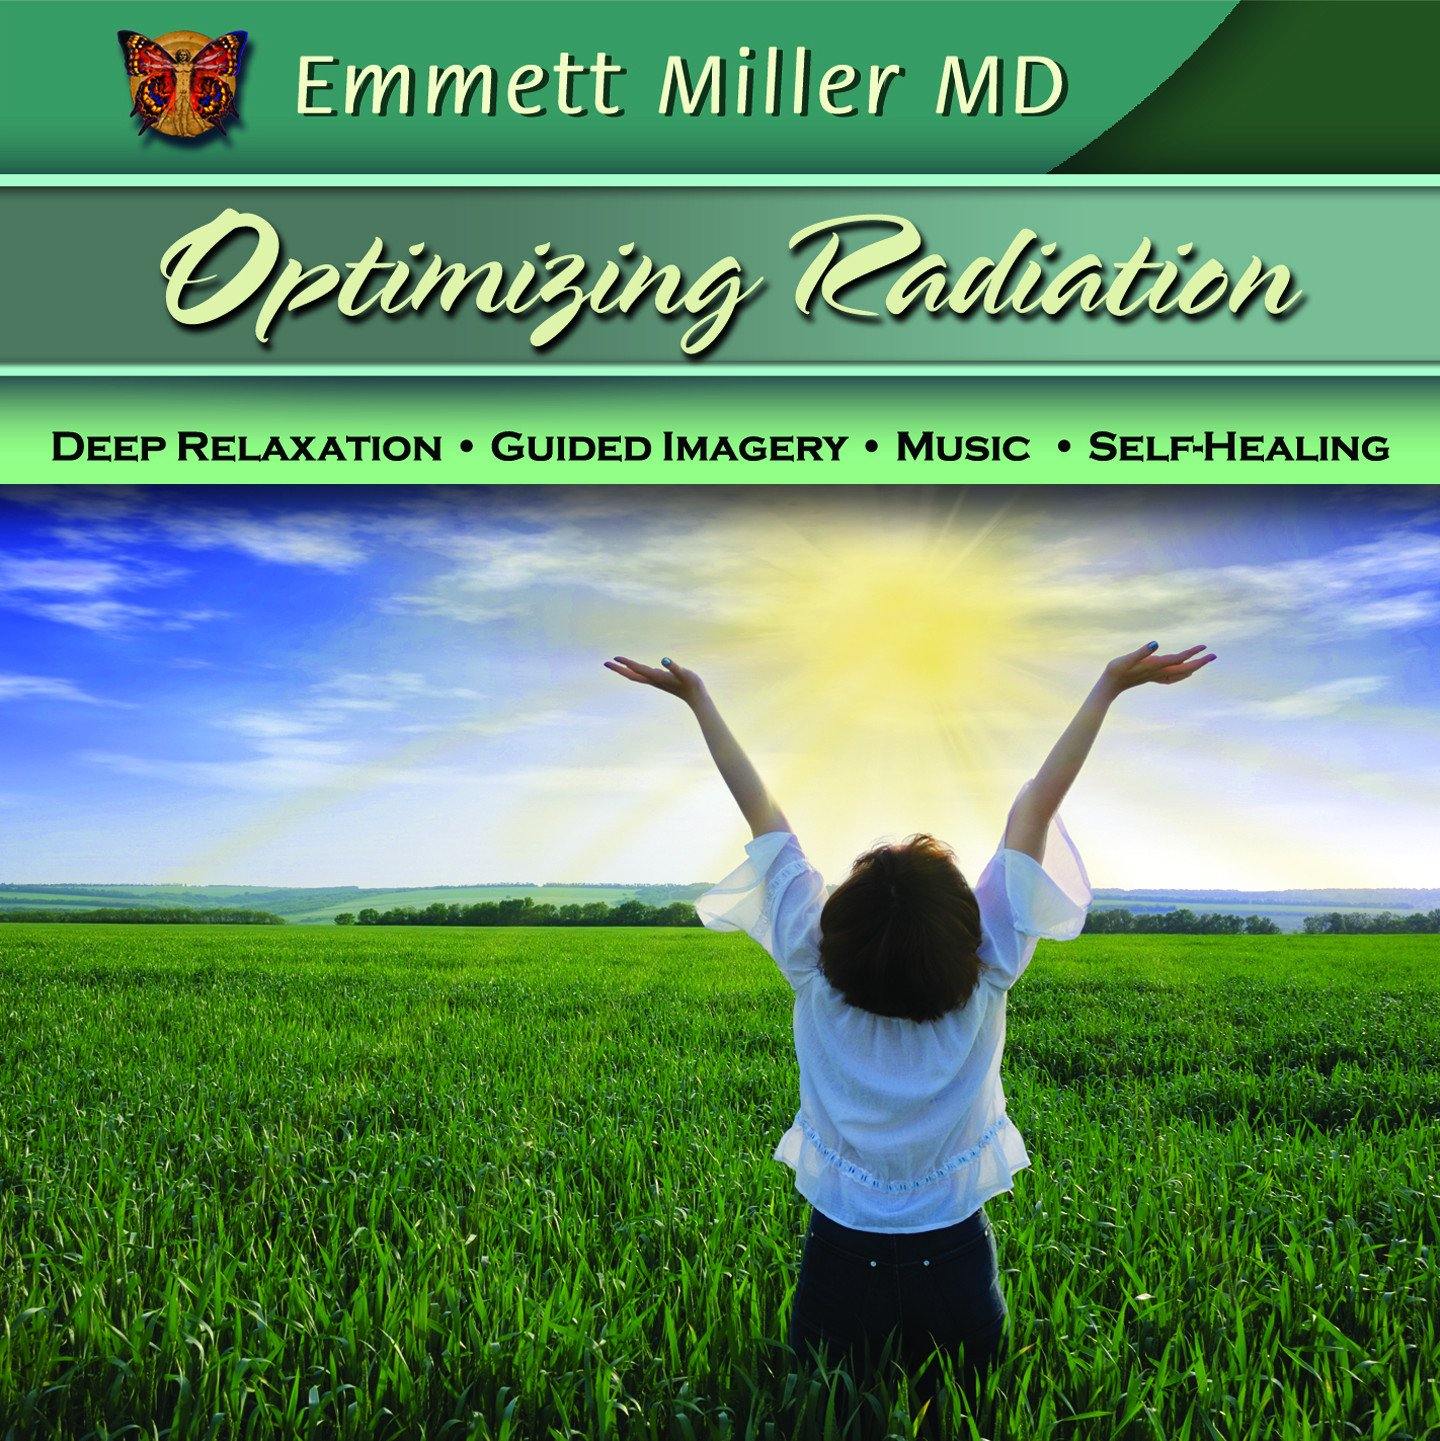 Optimizing Radiation Therapy with Dr. Emmett Miller Audio Program Dr. Emmett Miller - BetterListen!